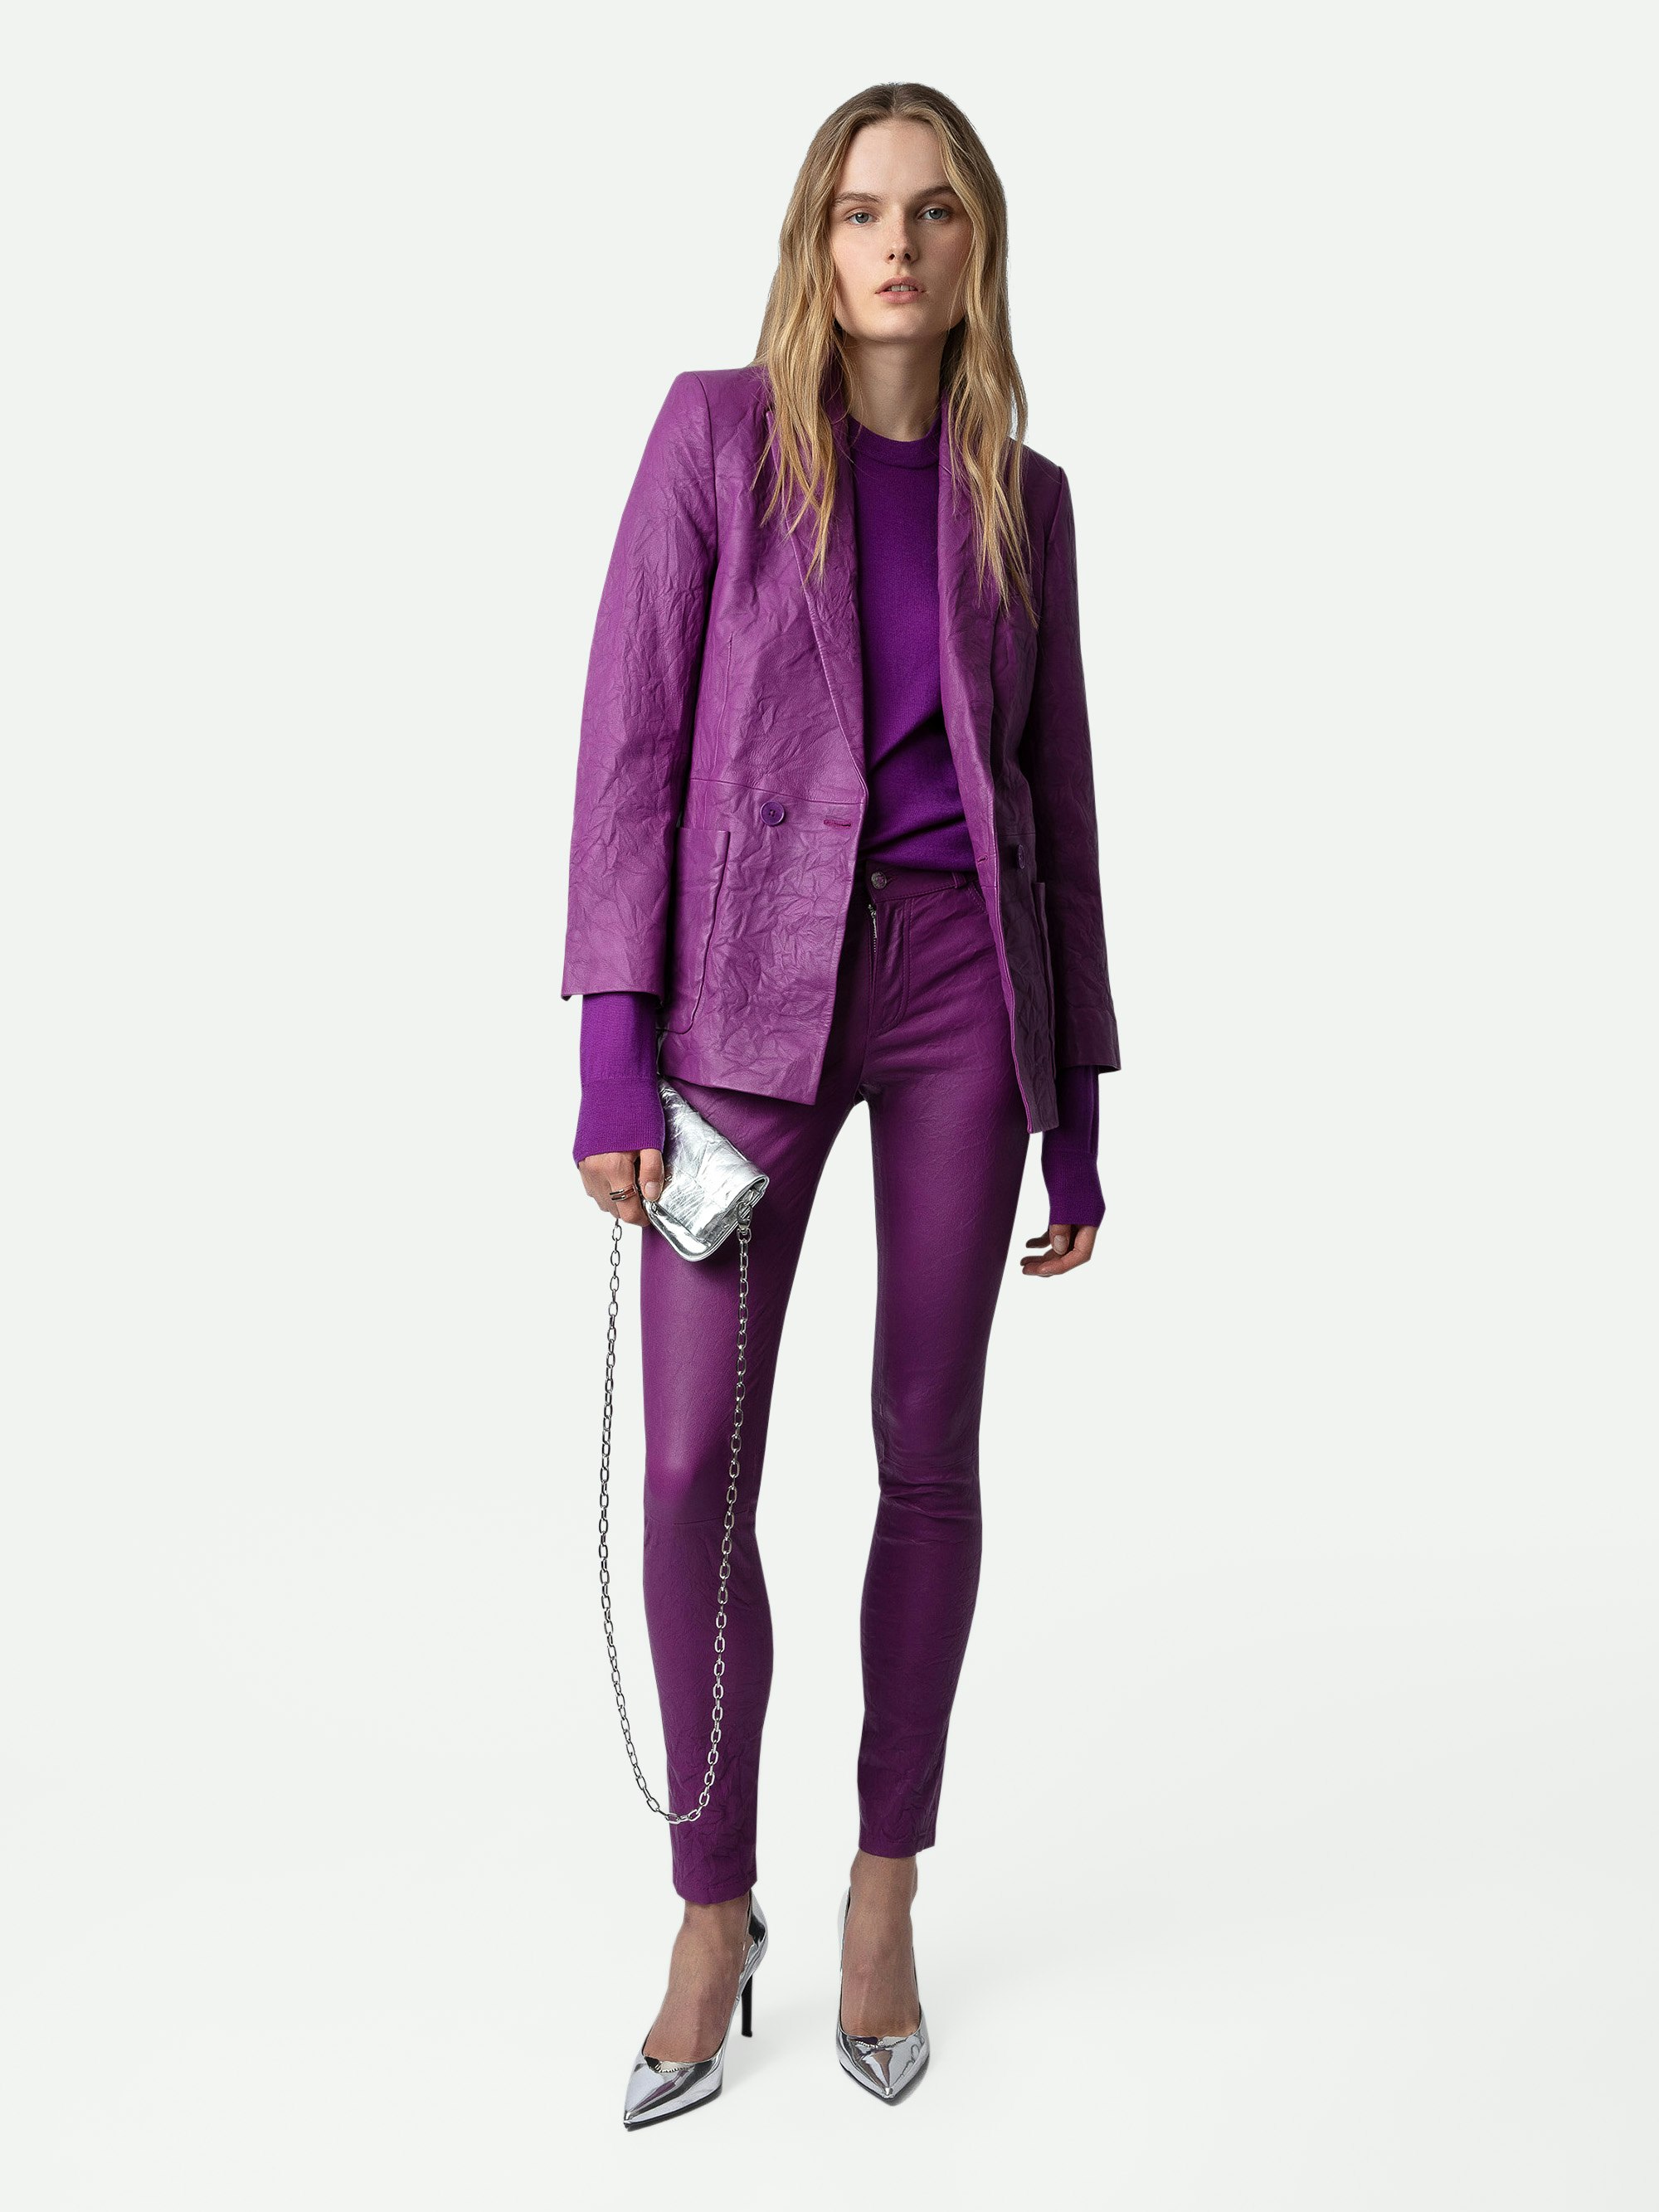 Hose Phlame Knitterleder - Hose aus Knitterleder mit Taschen in Violett.